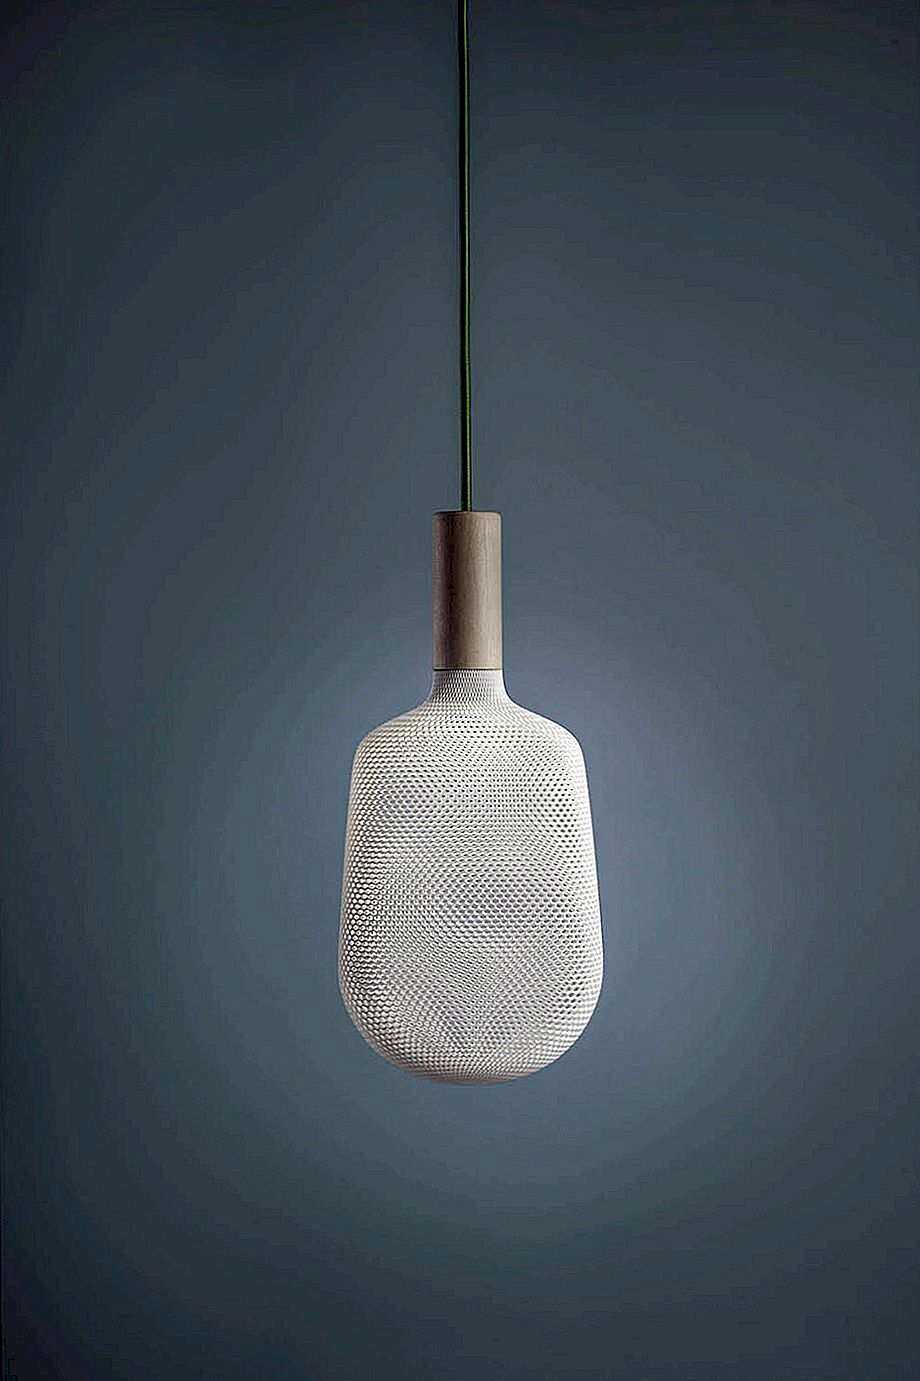 Afillia lampcollectie met originele 3D-bedrukte kantachtige diffusers